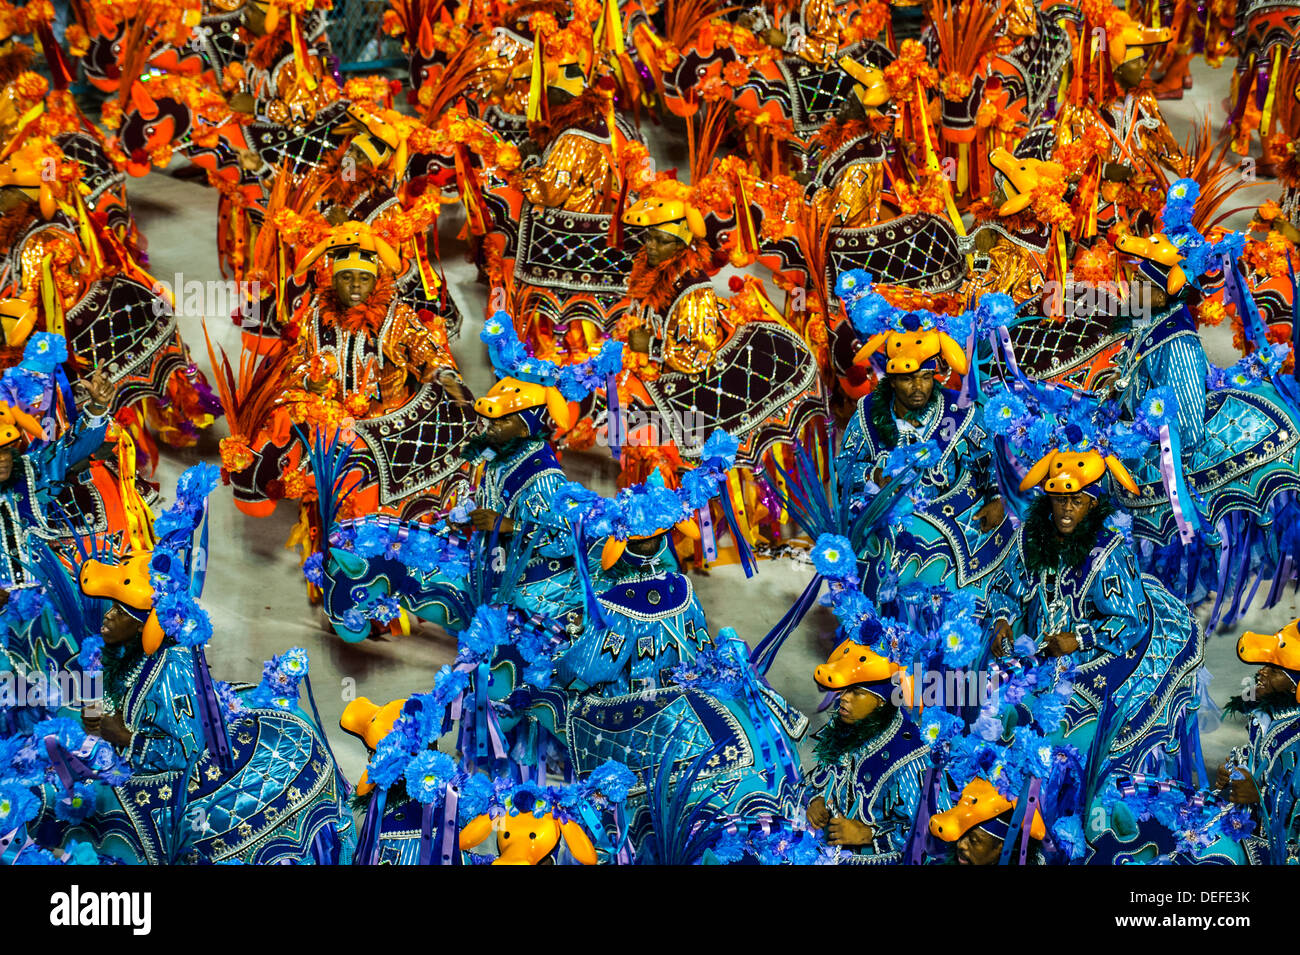 Défilé de Samba au Carnaval de Rio de Janeiro, Brésil, Amérique du Sud Banque D'Images